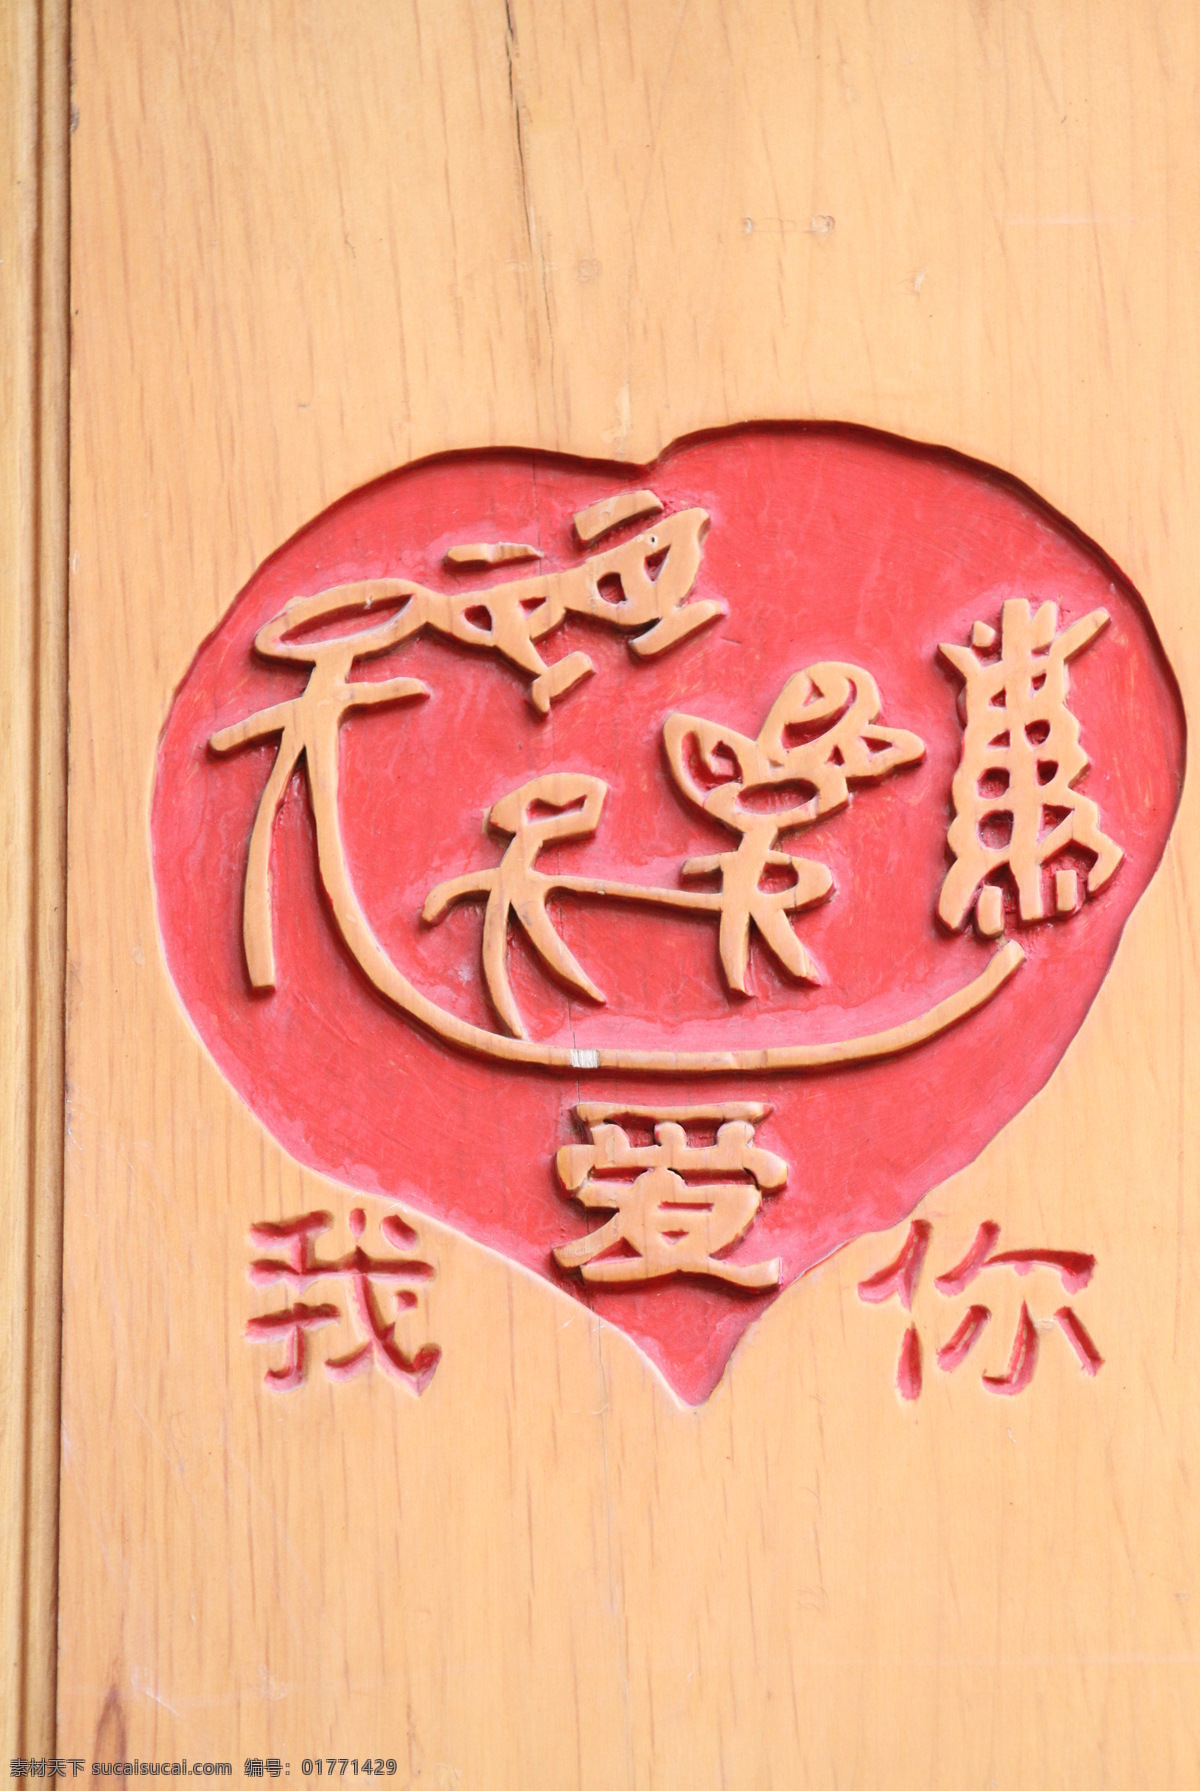 我爱你 丽江 文化 文化艺术 文字 宗教信仰 东巴文